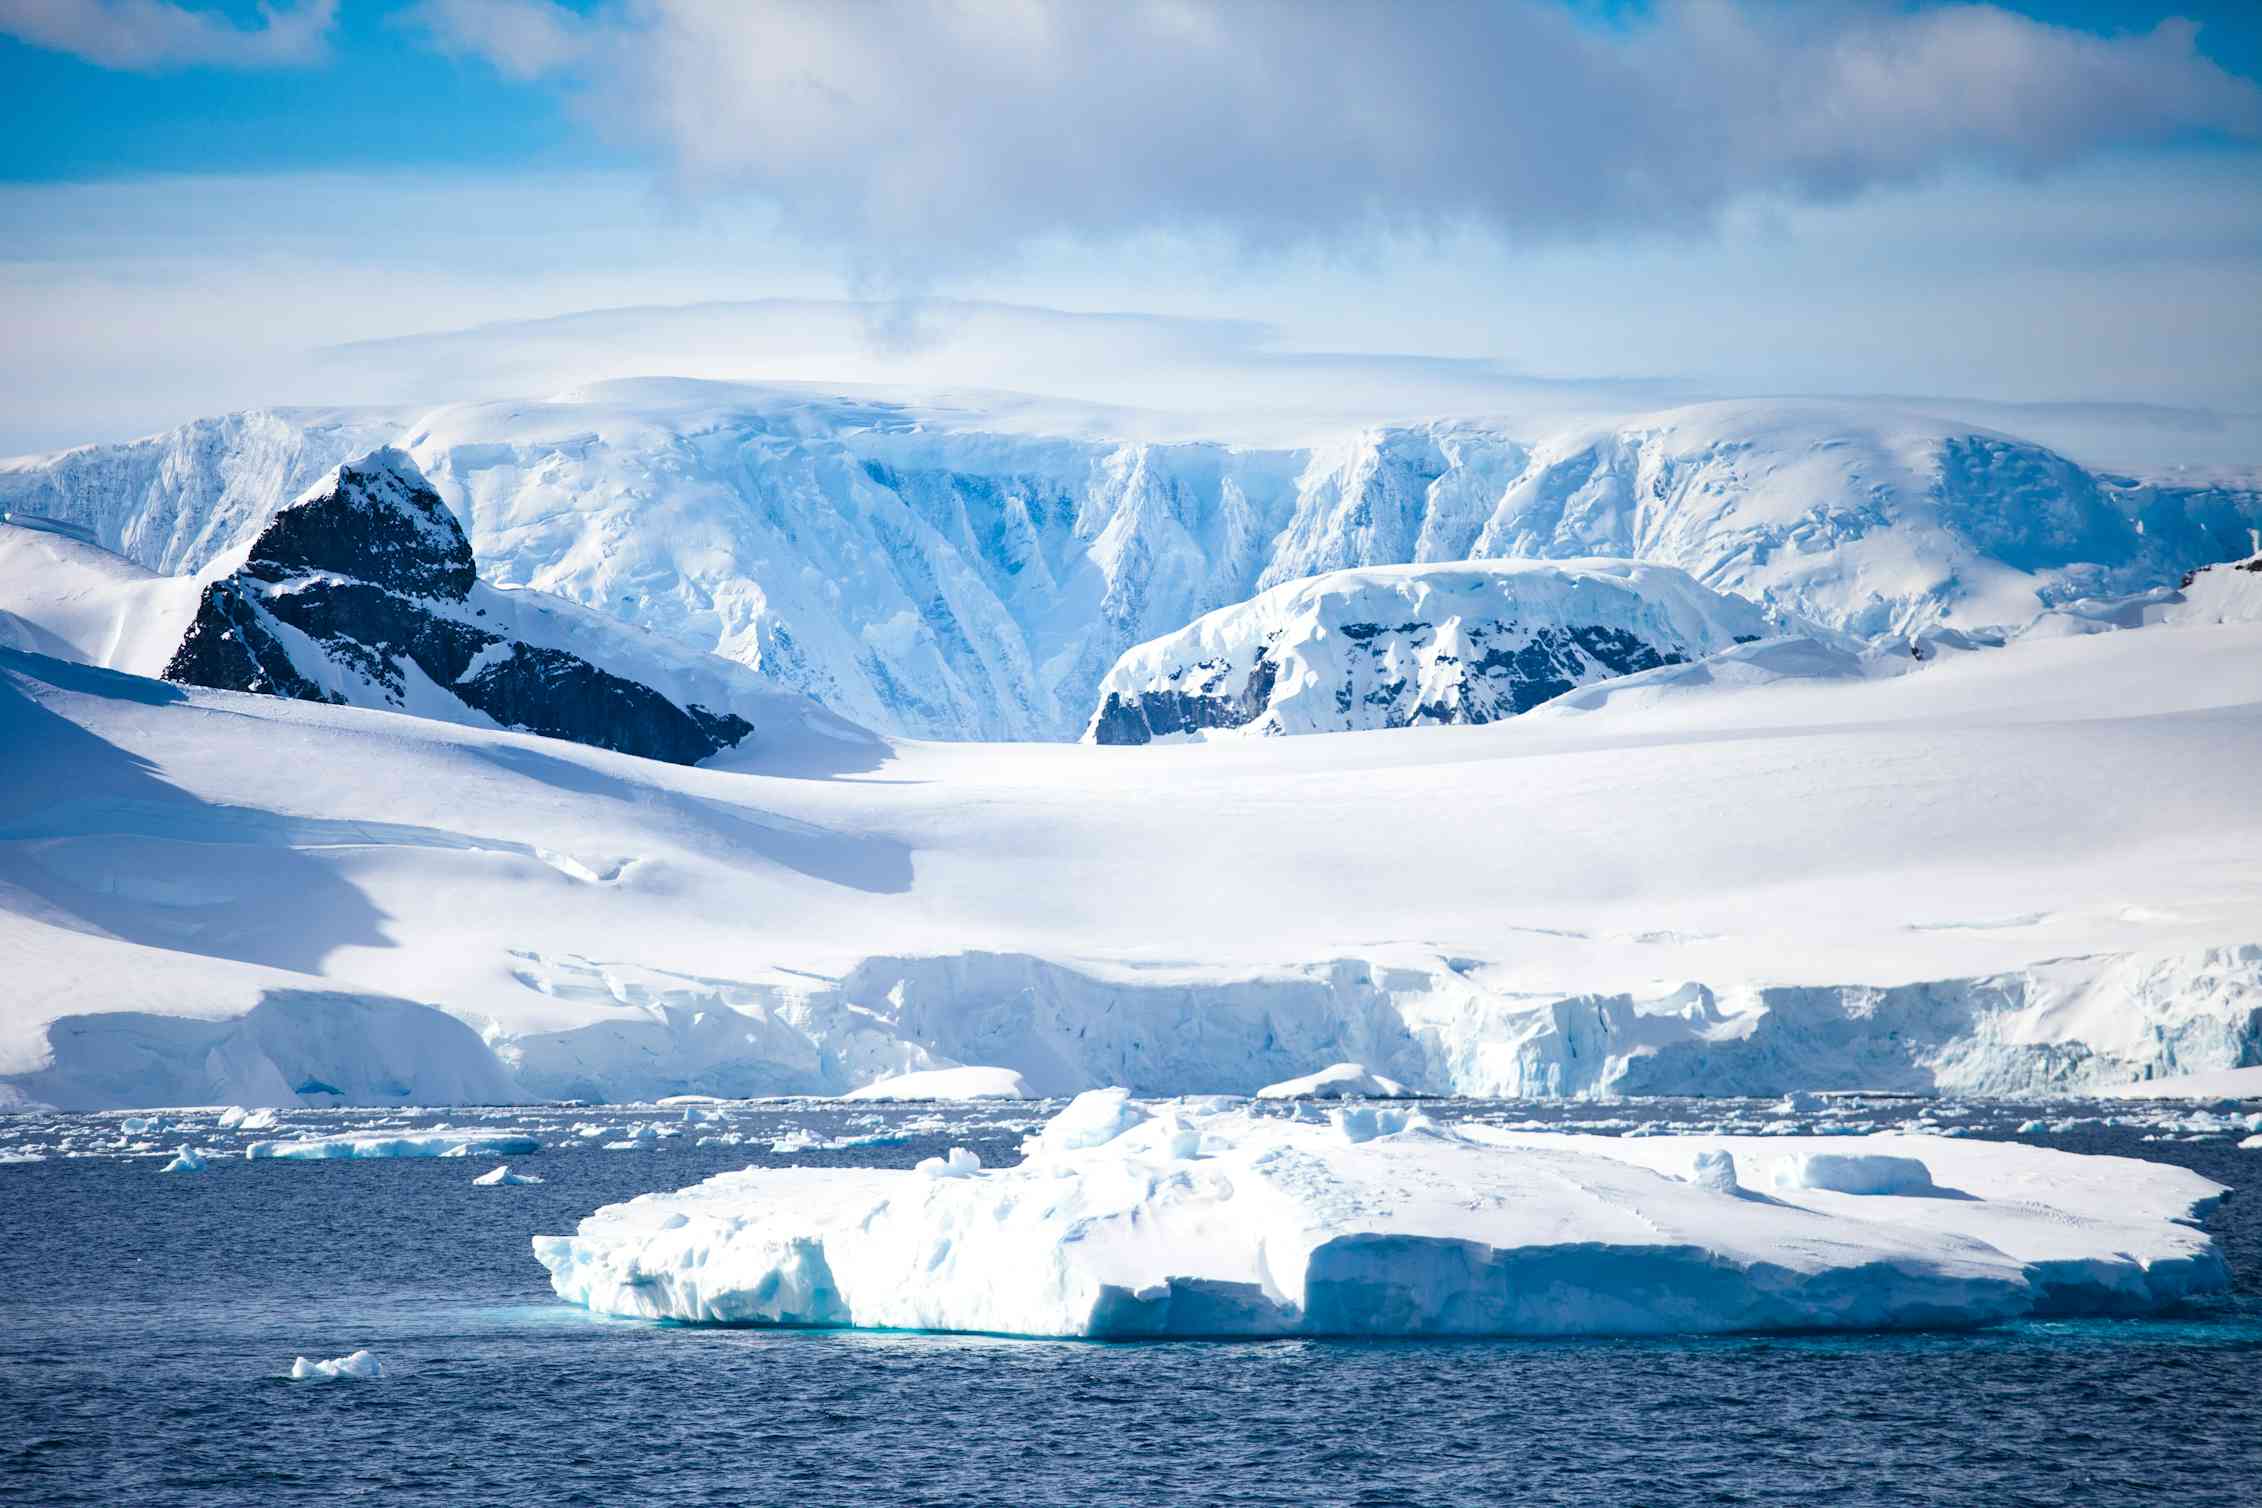 Крупнейшее антарктическое. Арктика Антарктика Антарктида. Покровные ледники Антарктиды. Южный полюс Антарктика. Антарктида (материк) ледники Антарктиды.